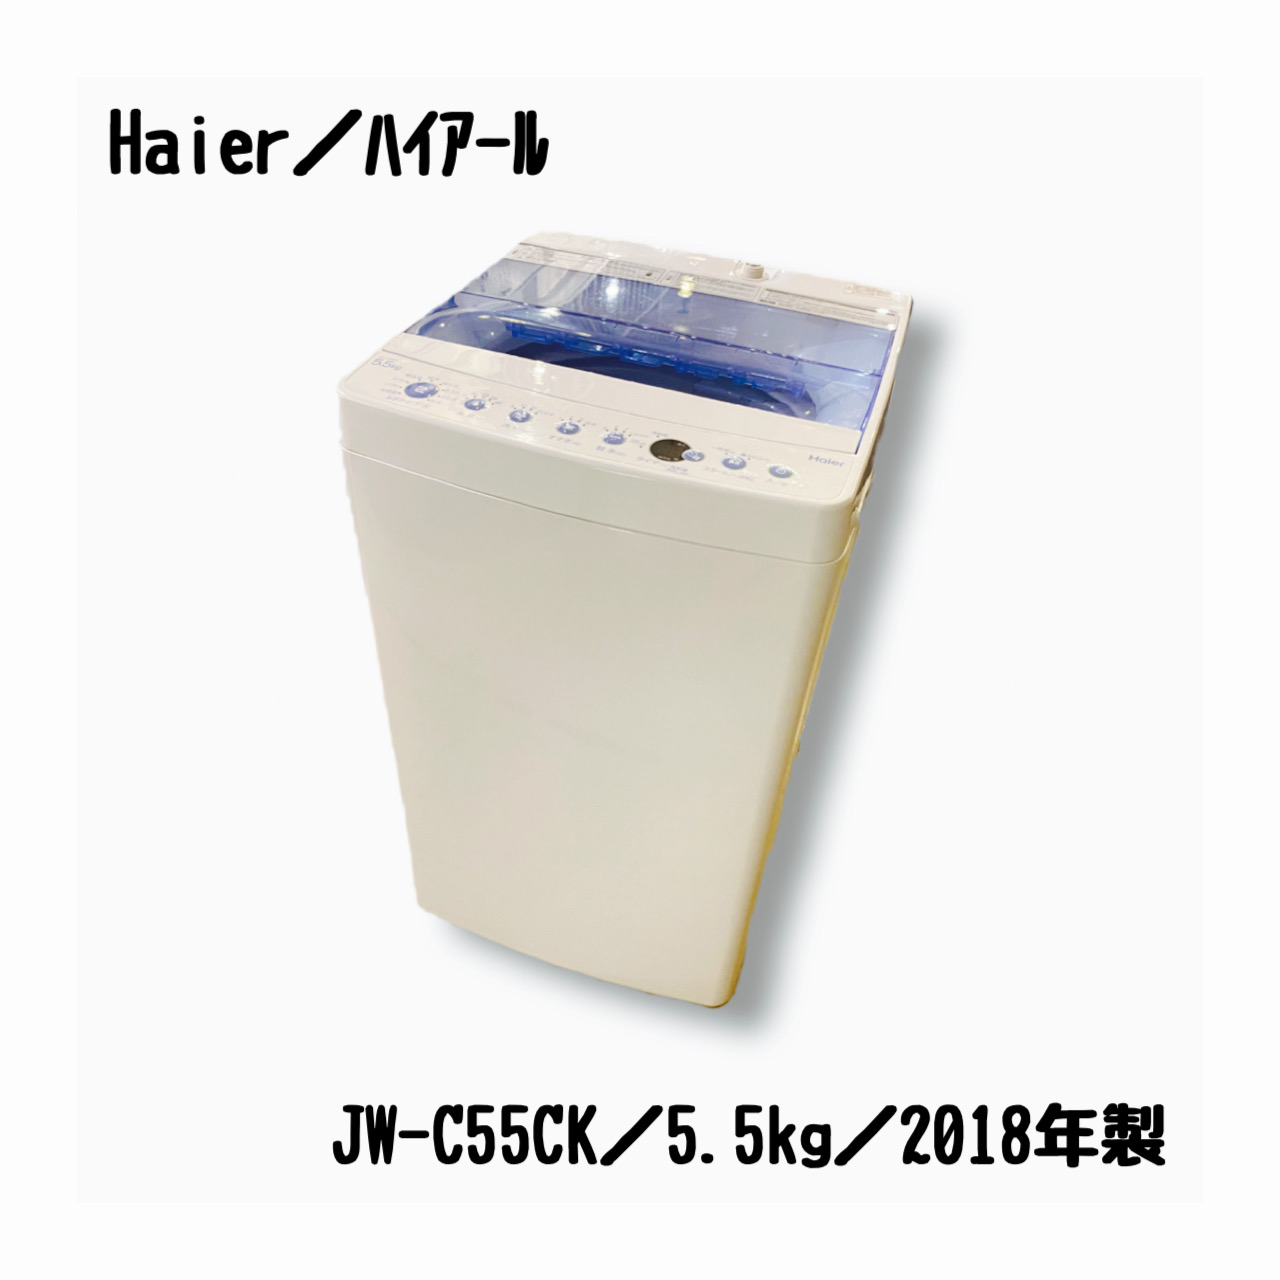 2019年製/ハイアール/JW-C55CK品番JW-C55CK